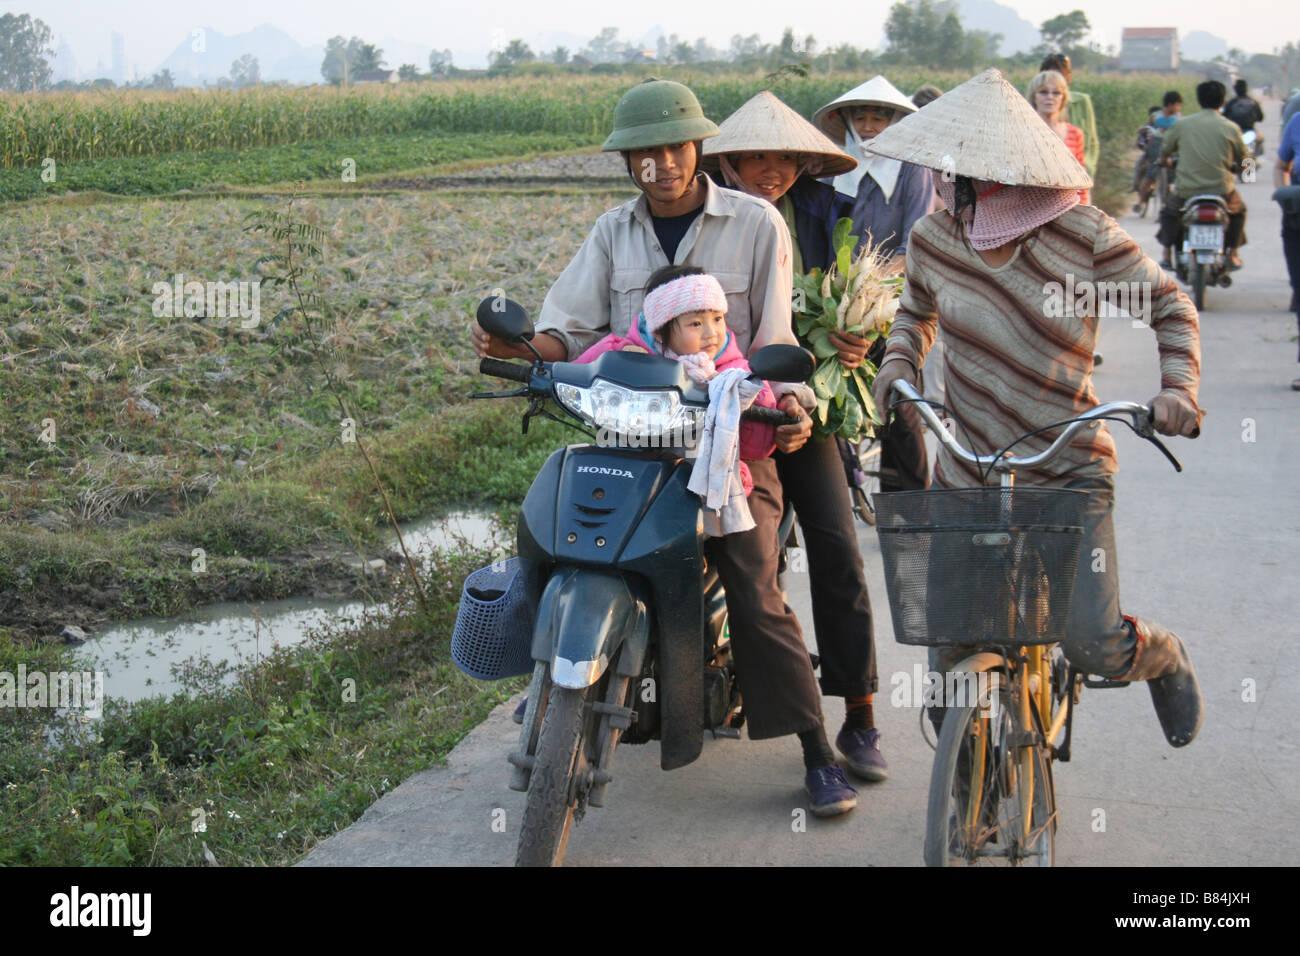 Portrait d'une jeune famille vietnamienne sur une moto près d'un champ au Vietnam Banque D'Images